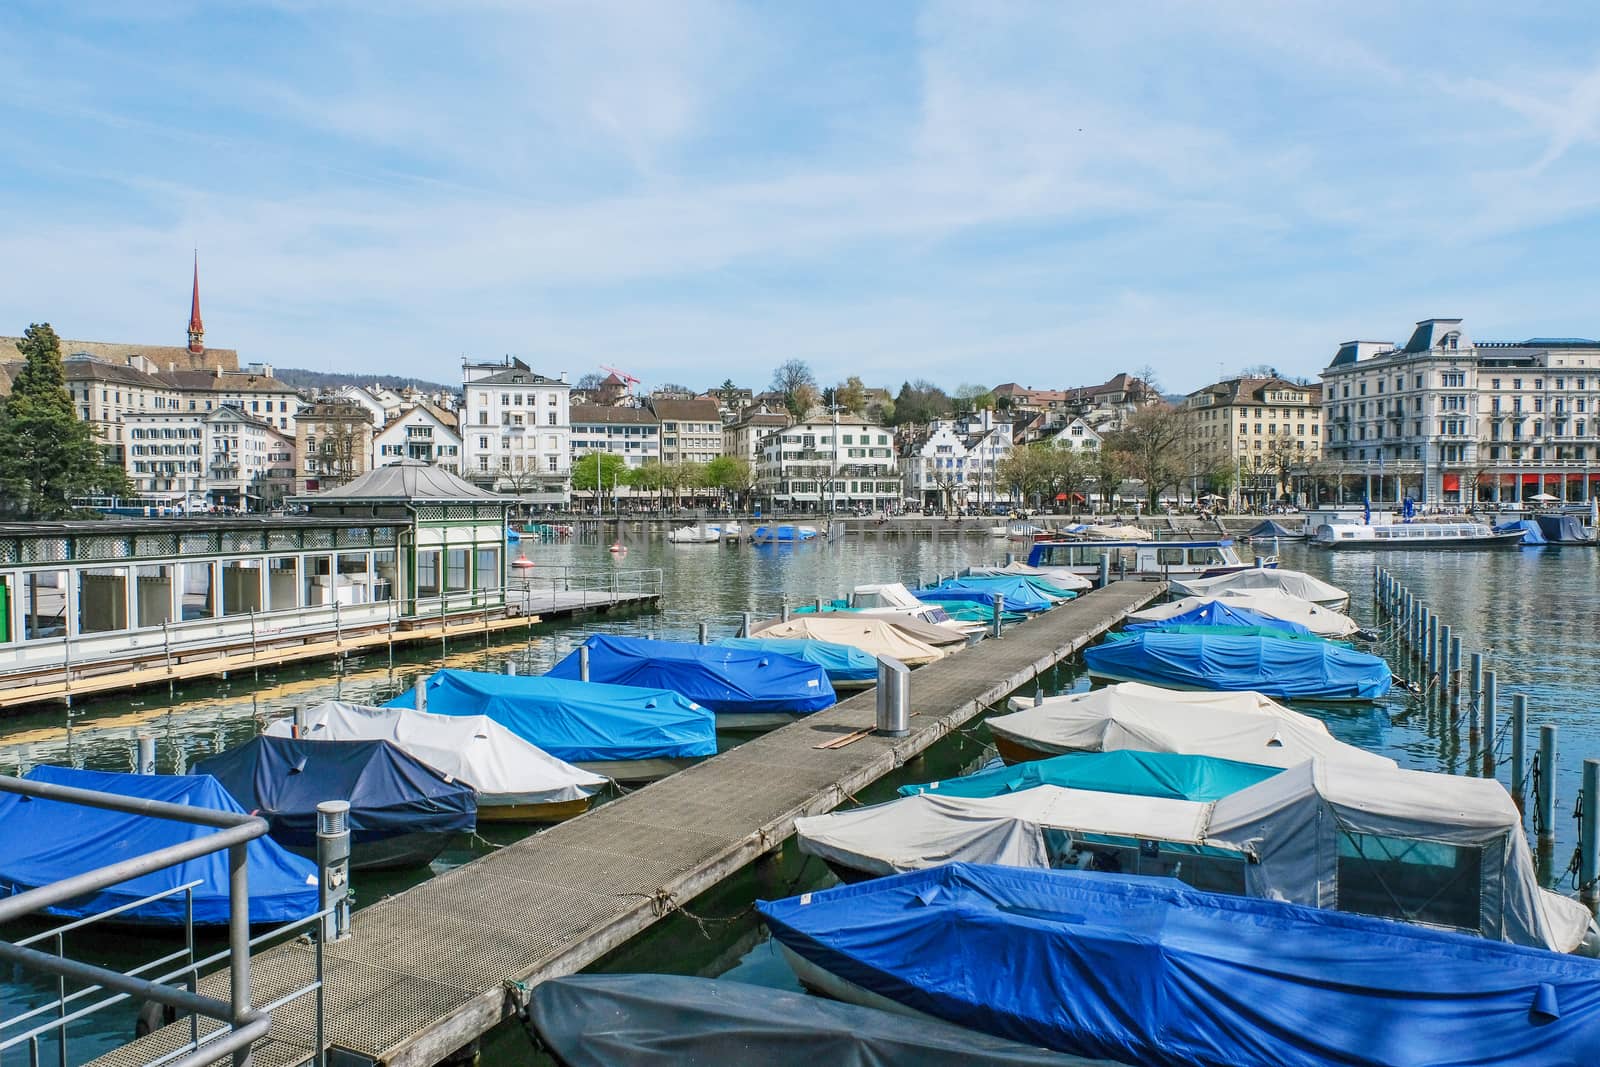   Luxury Marina Boats In Zurich, Switzerland